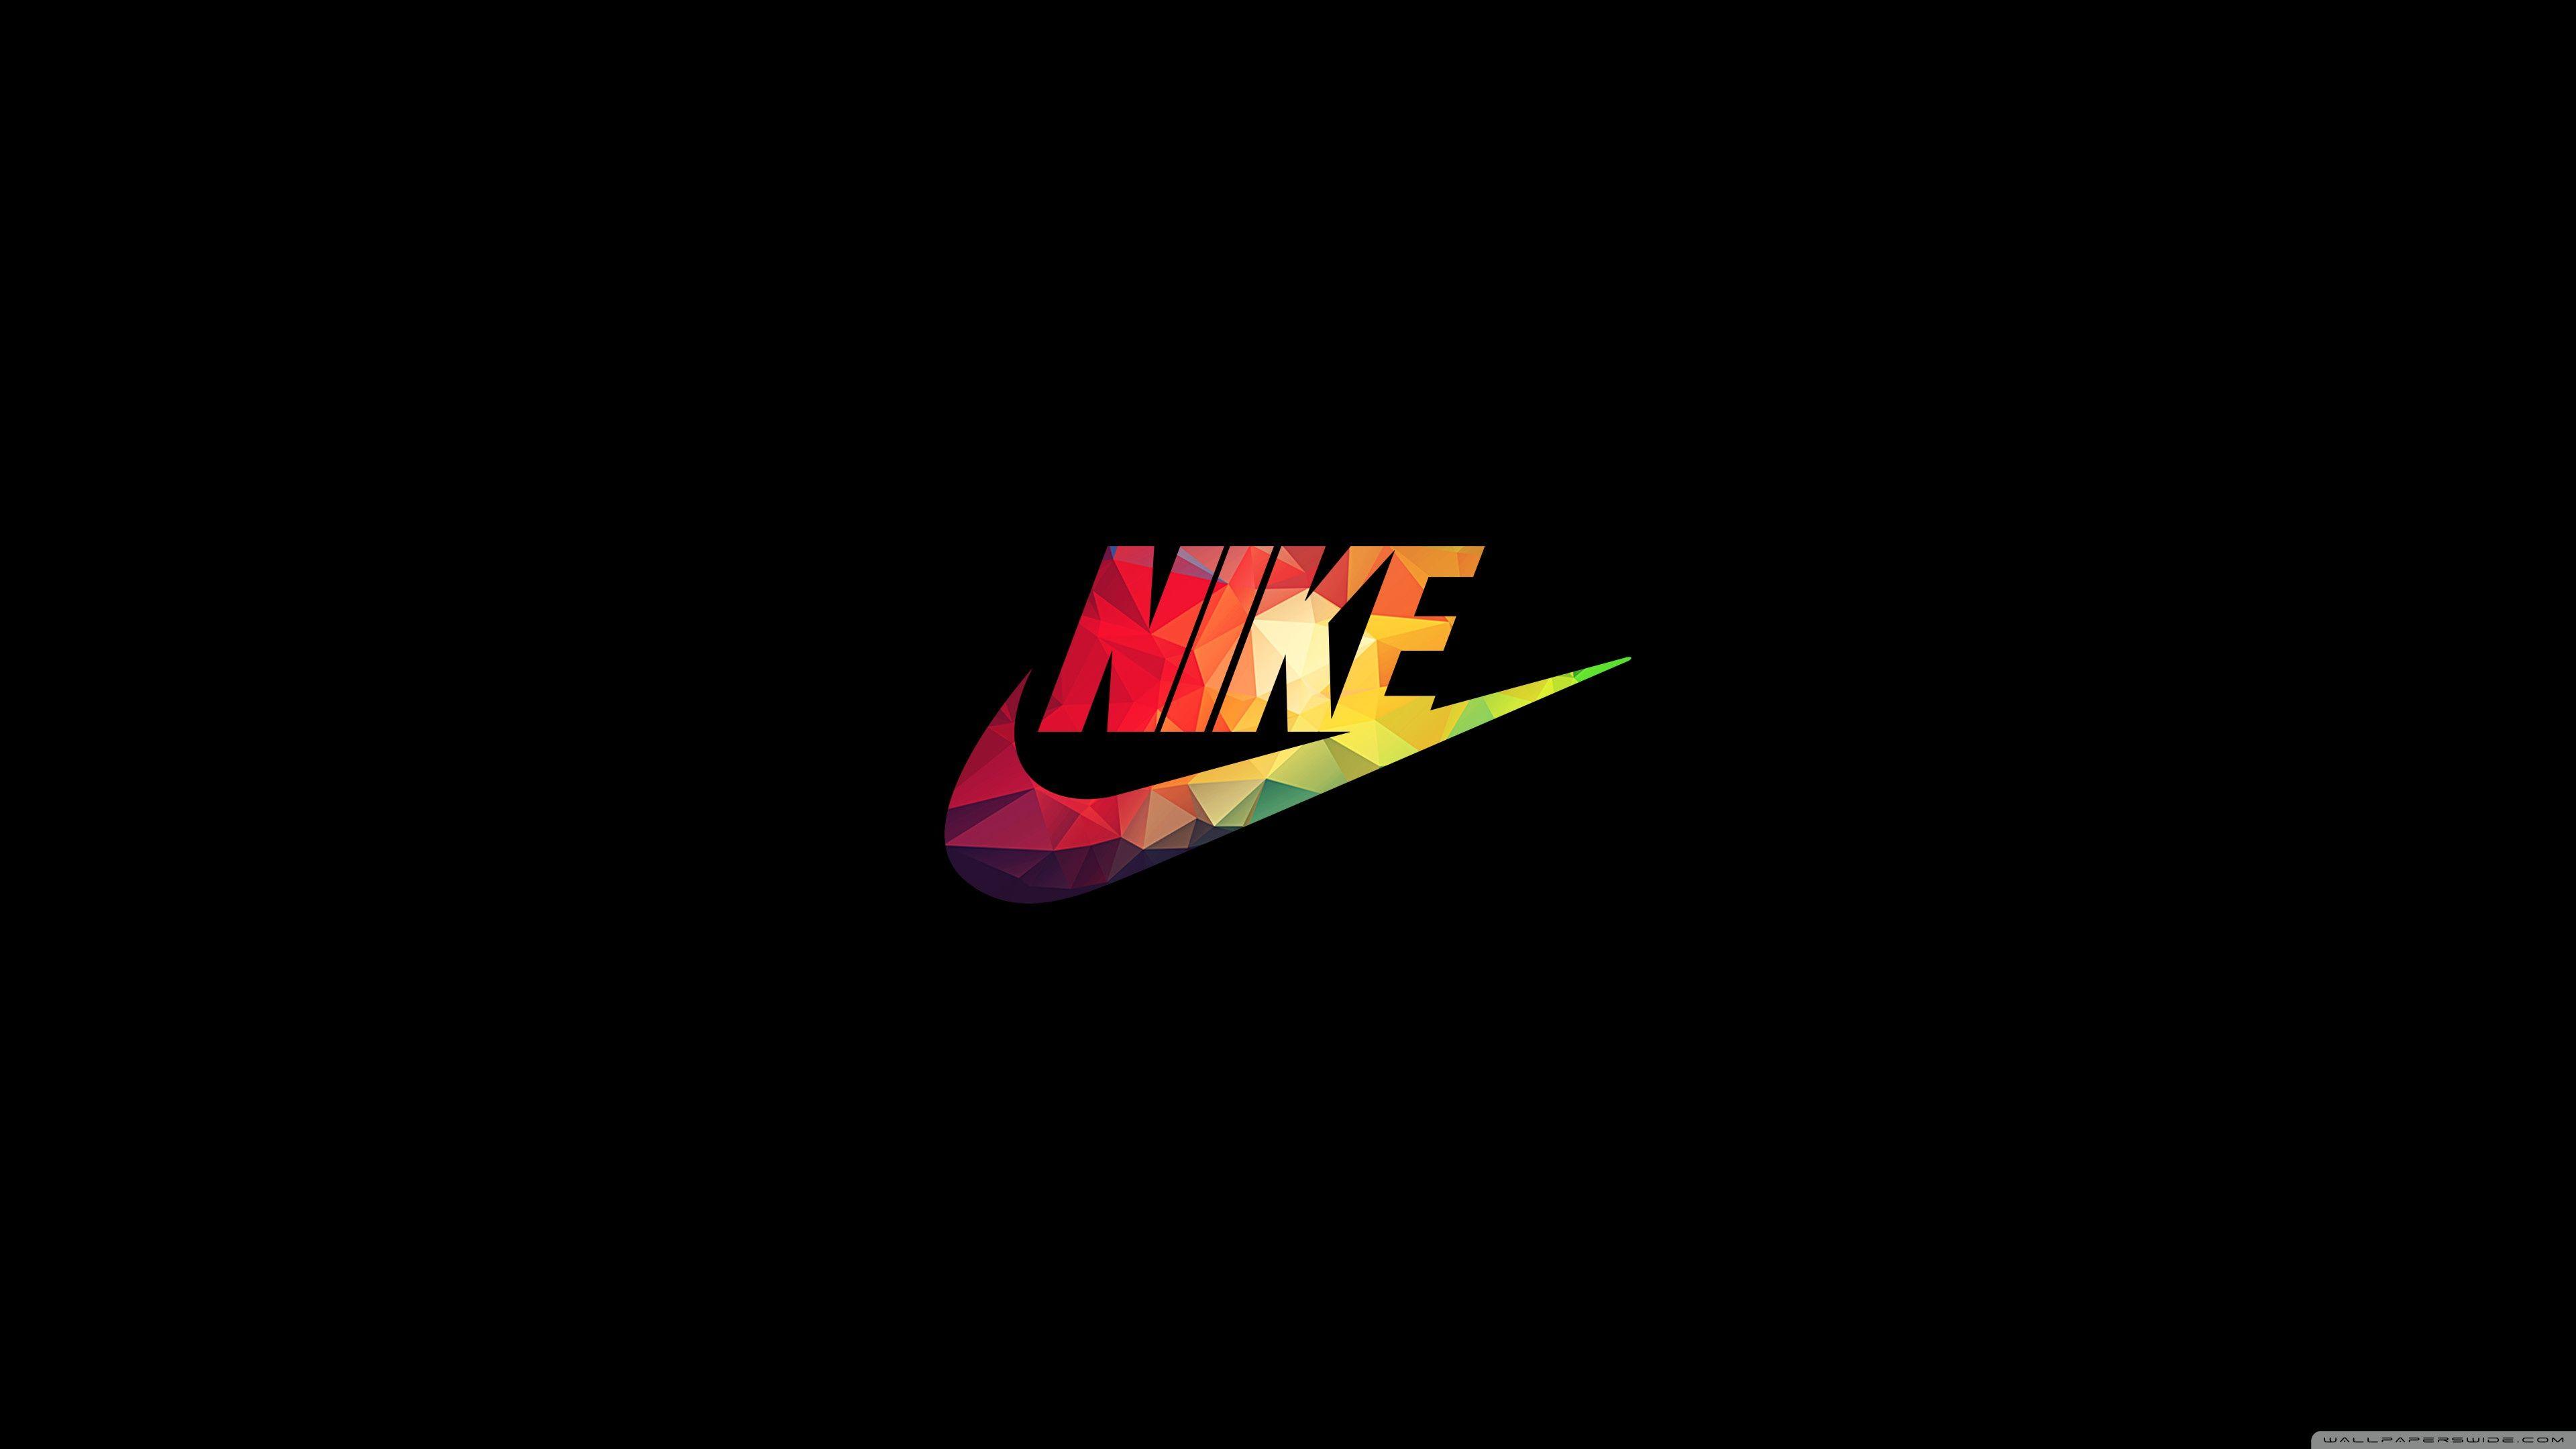 4K Nike Wallpaper Free 4K Nike Background